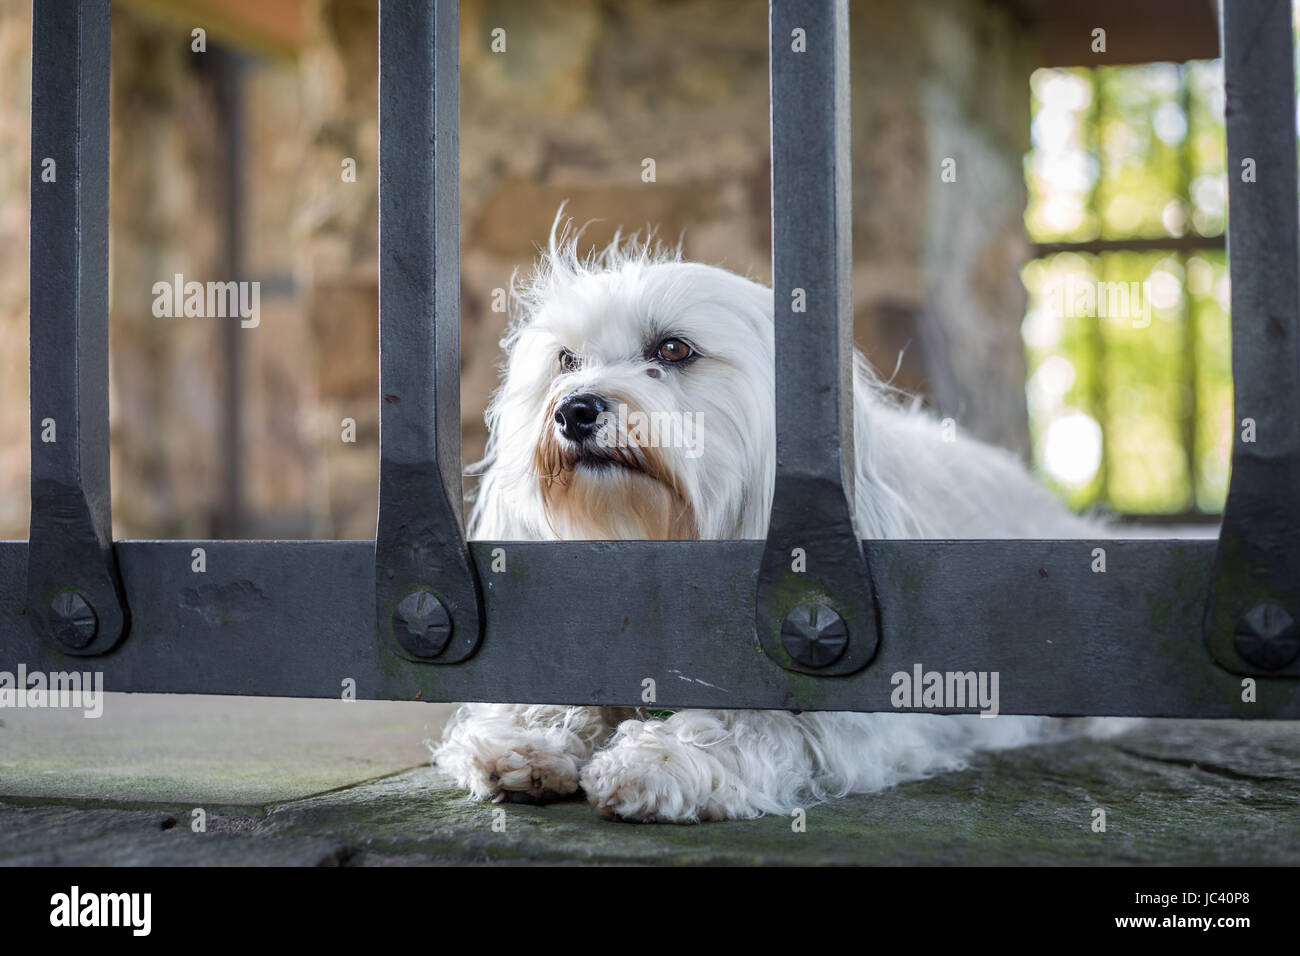 Ein kleiner weißer Hund liegt hinter einem Gitter auf dem Steinboden. Stock Photo